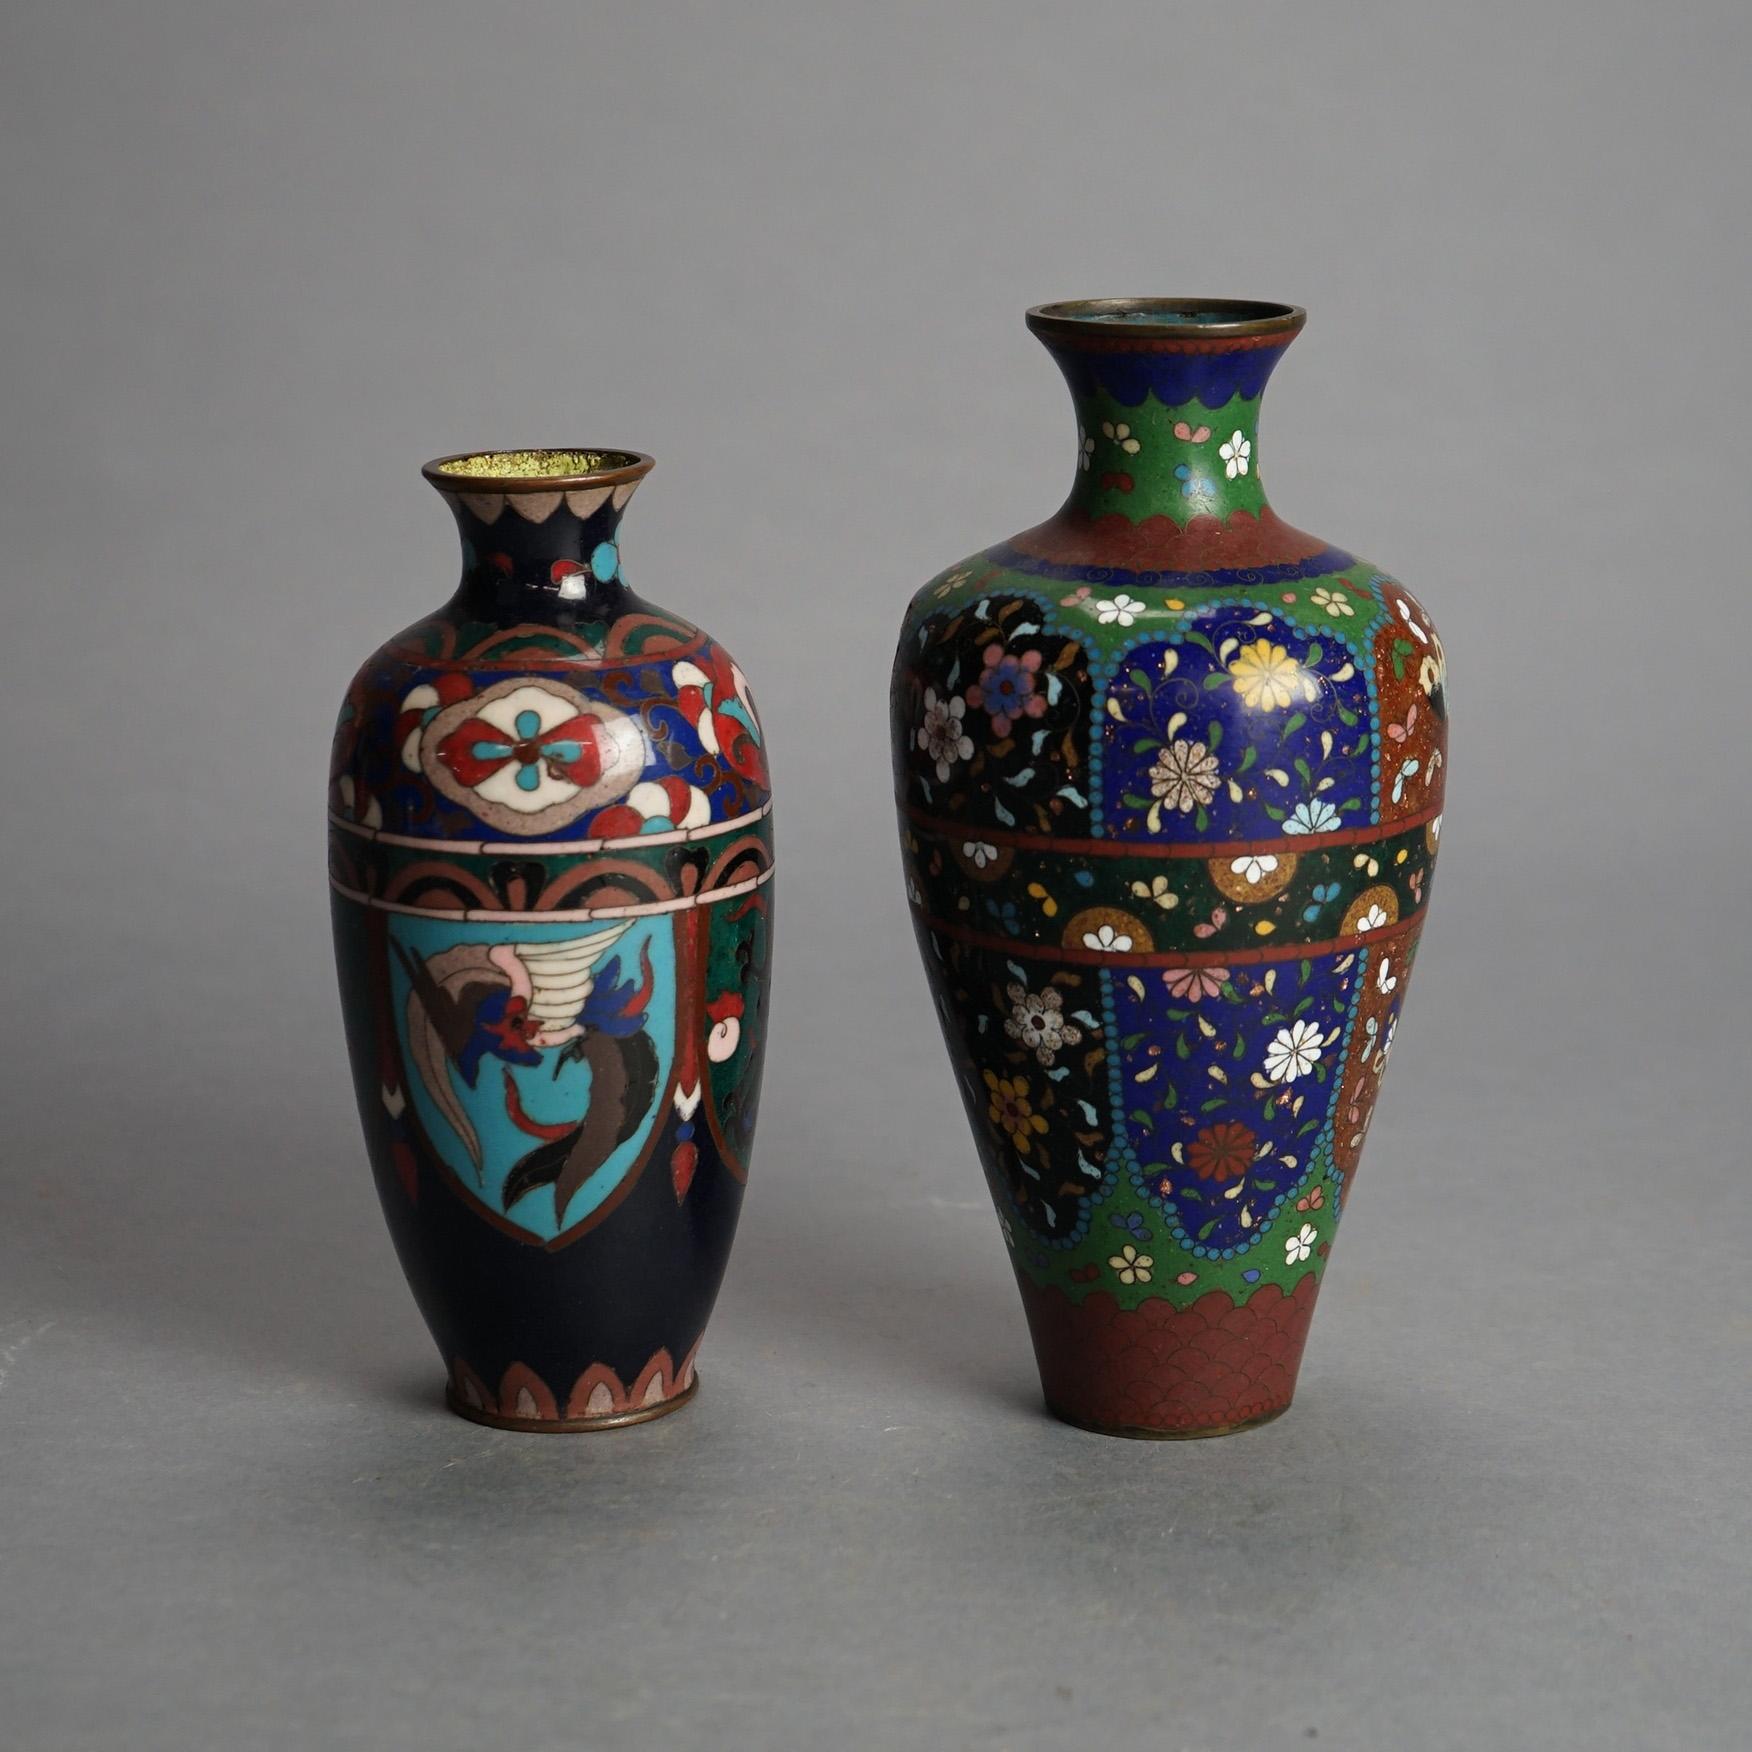 Deux vases japonais anciens émaillés cloisonnés C1920

Mesures - 8 